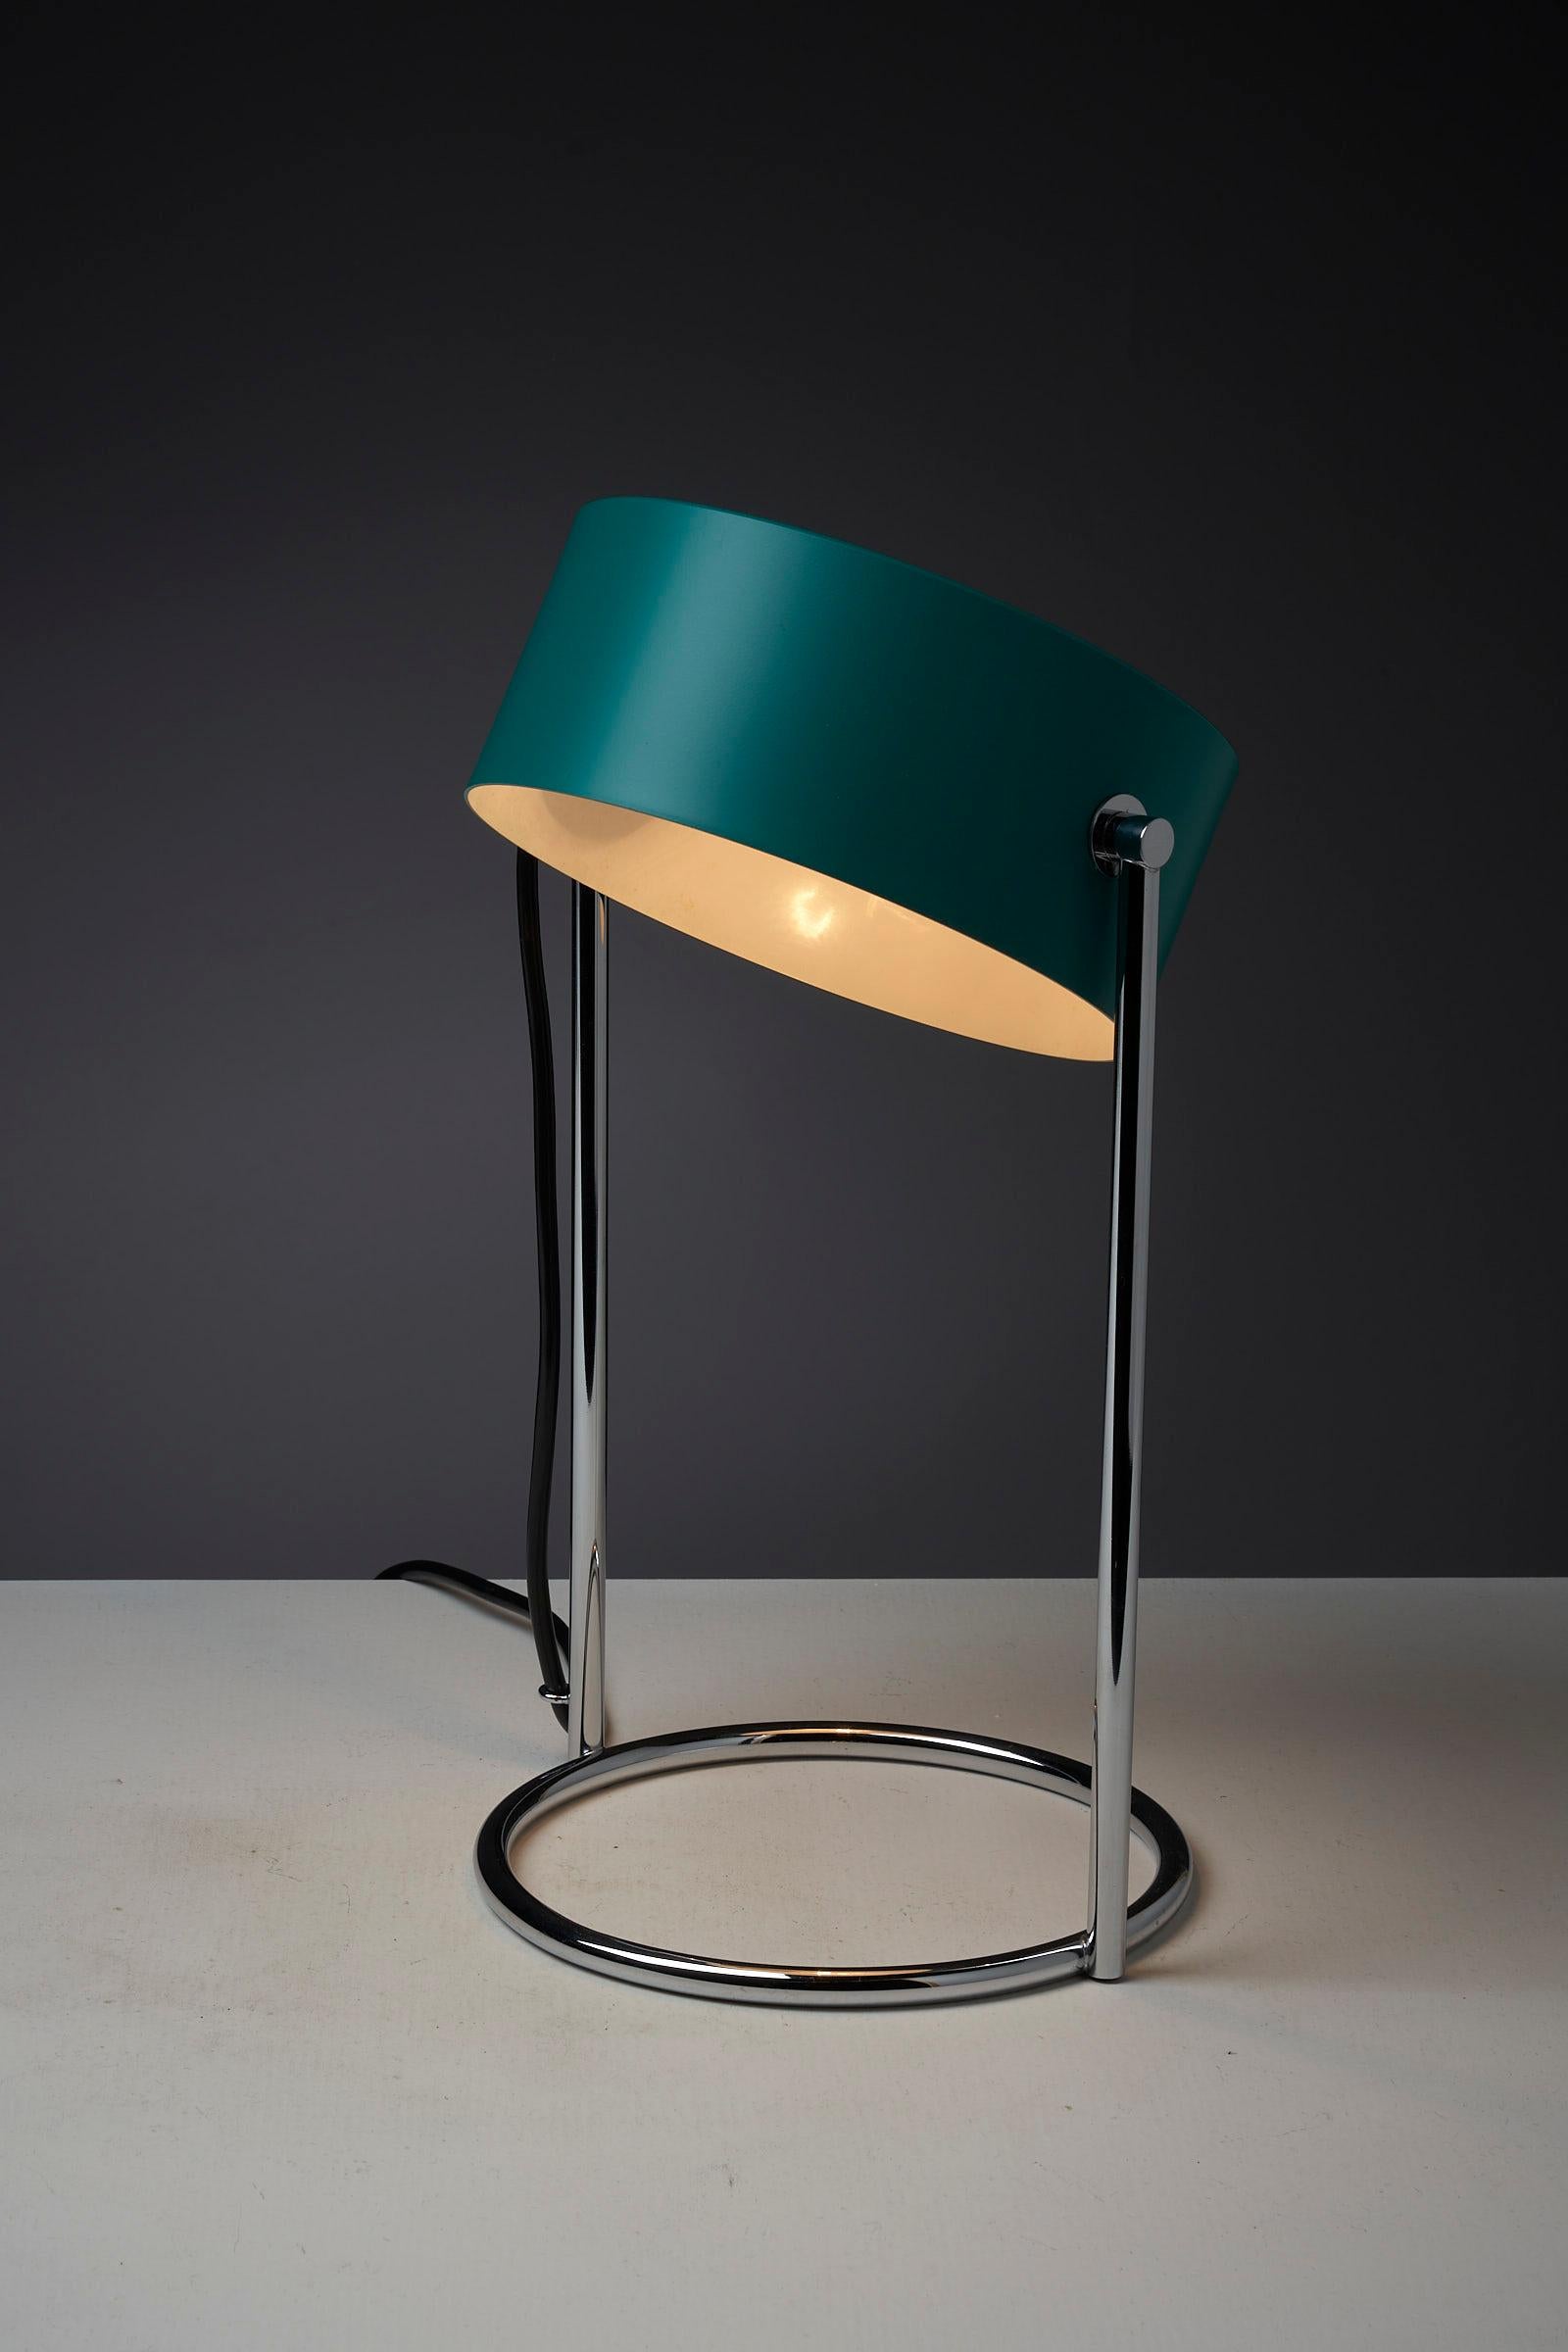 Voici une élégante lampe de table en superbe état, dotée d'un abat-jour vert pétrole en métal laqué entièrement orientable autour de son axe. L'abat-jour est complété par une base en métal chromé, qui s'harmonise parfaitement avec sa couleur et son